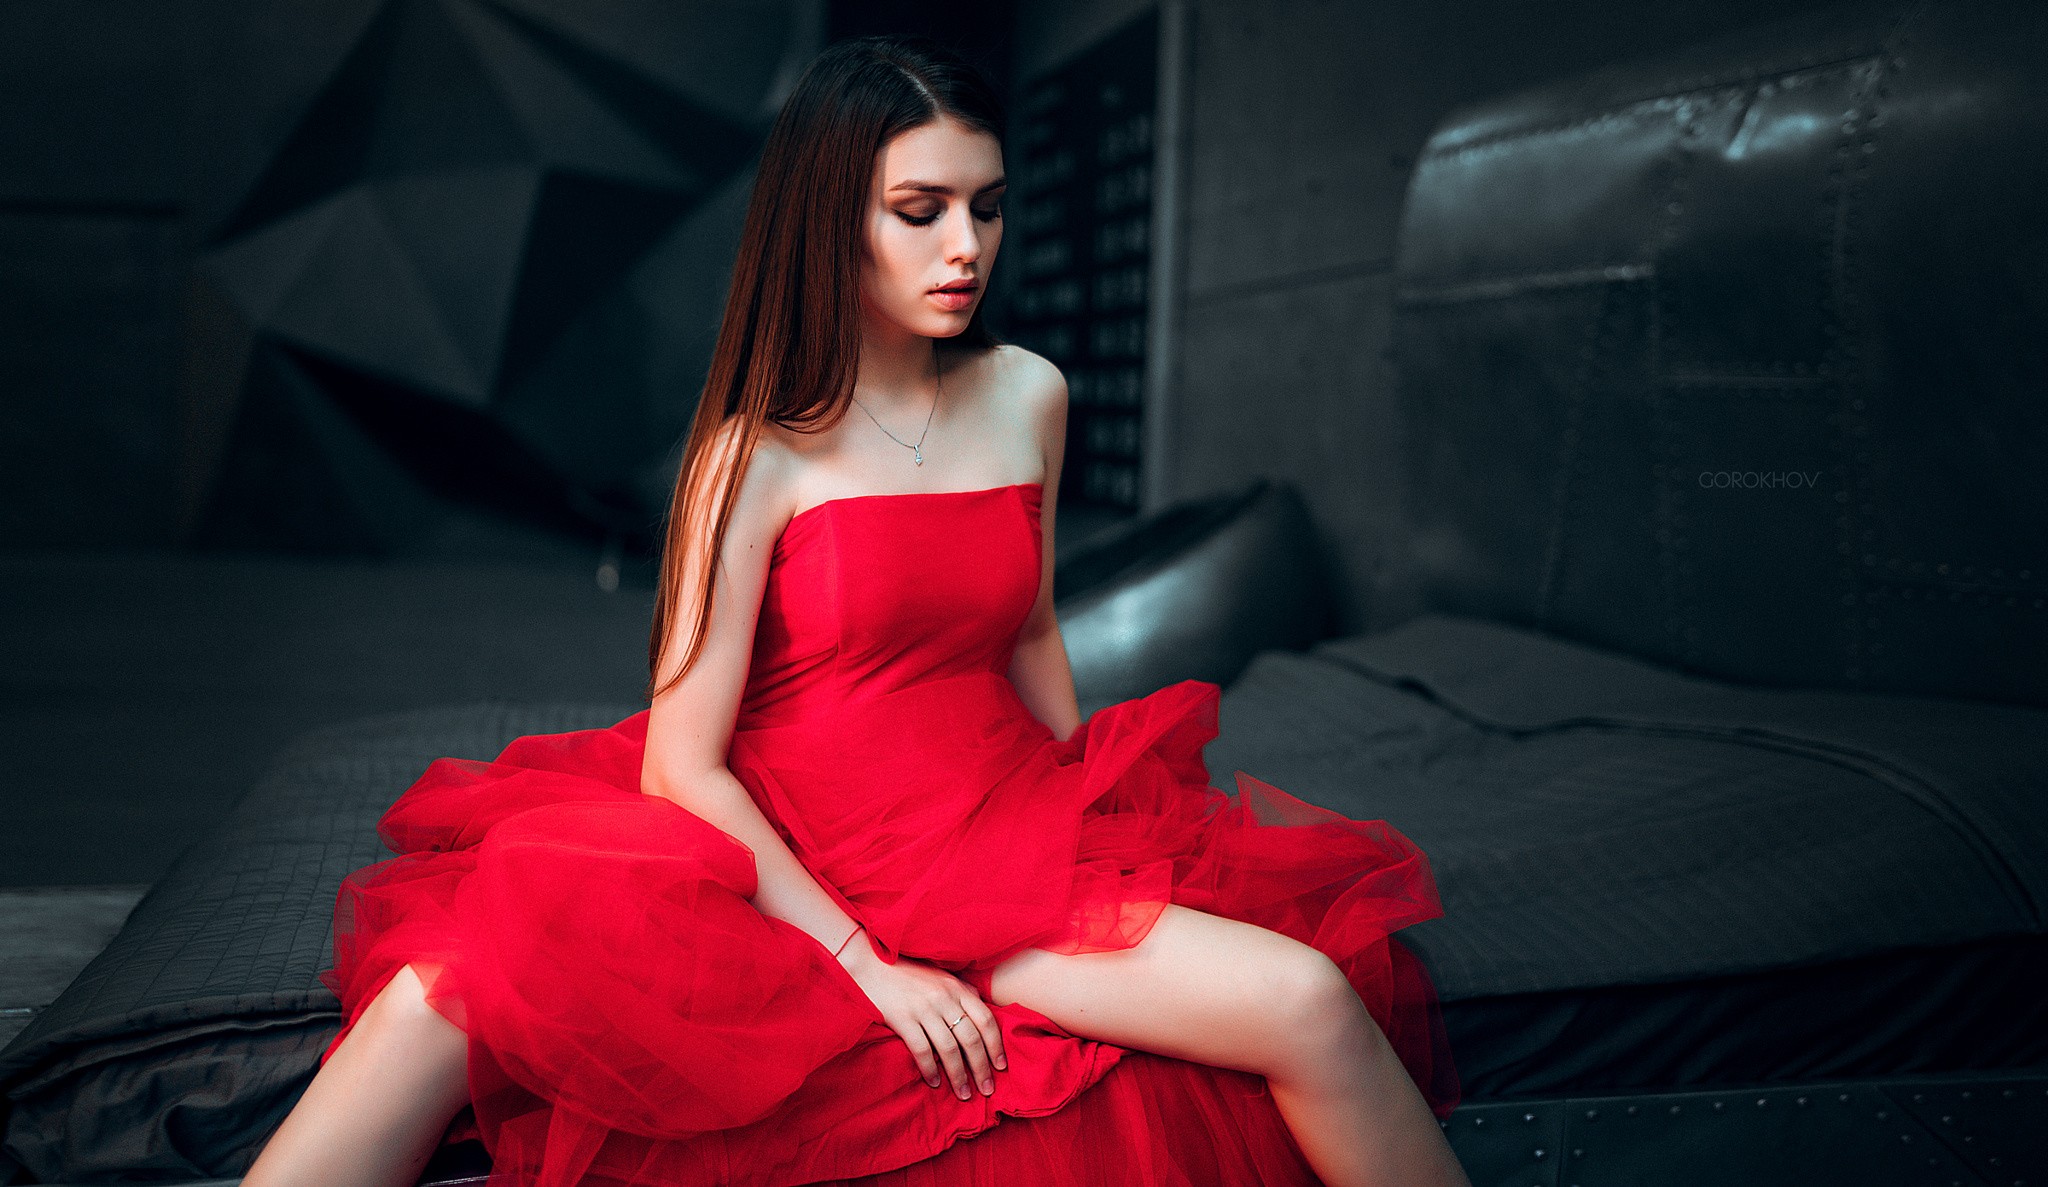 Women Ivan Gorokhov Model Long Hair Brunette Straight Hair Dress Red